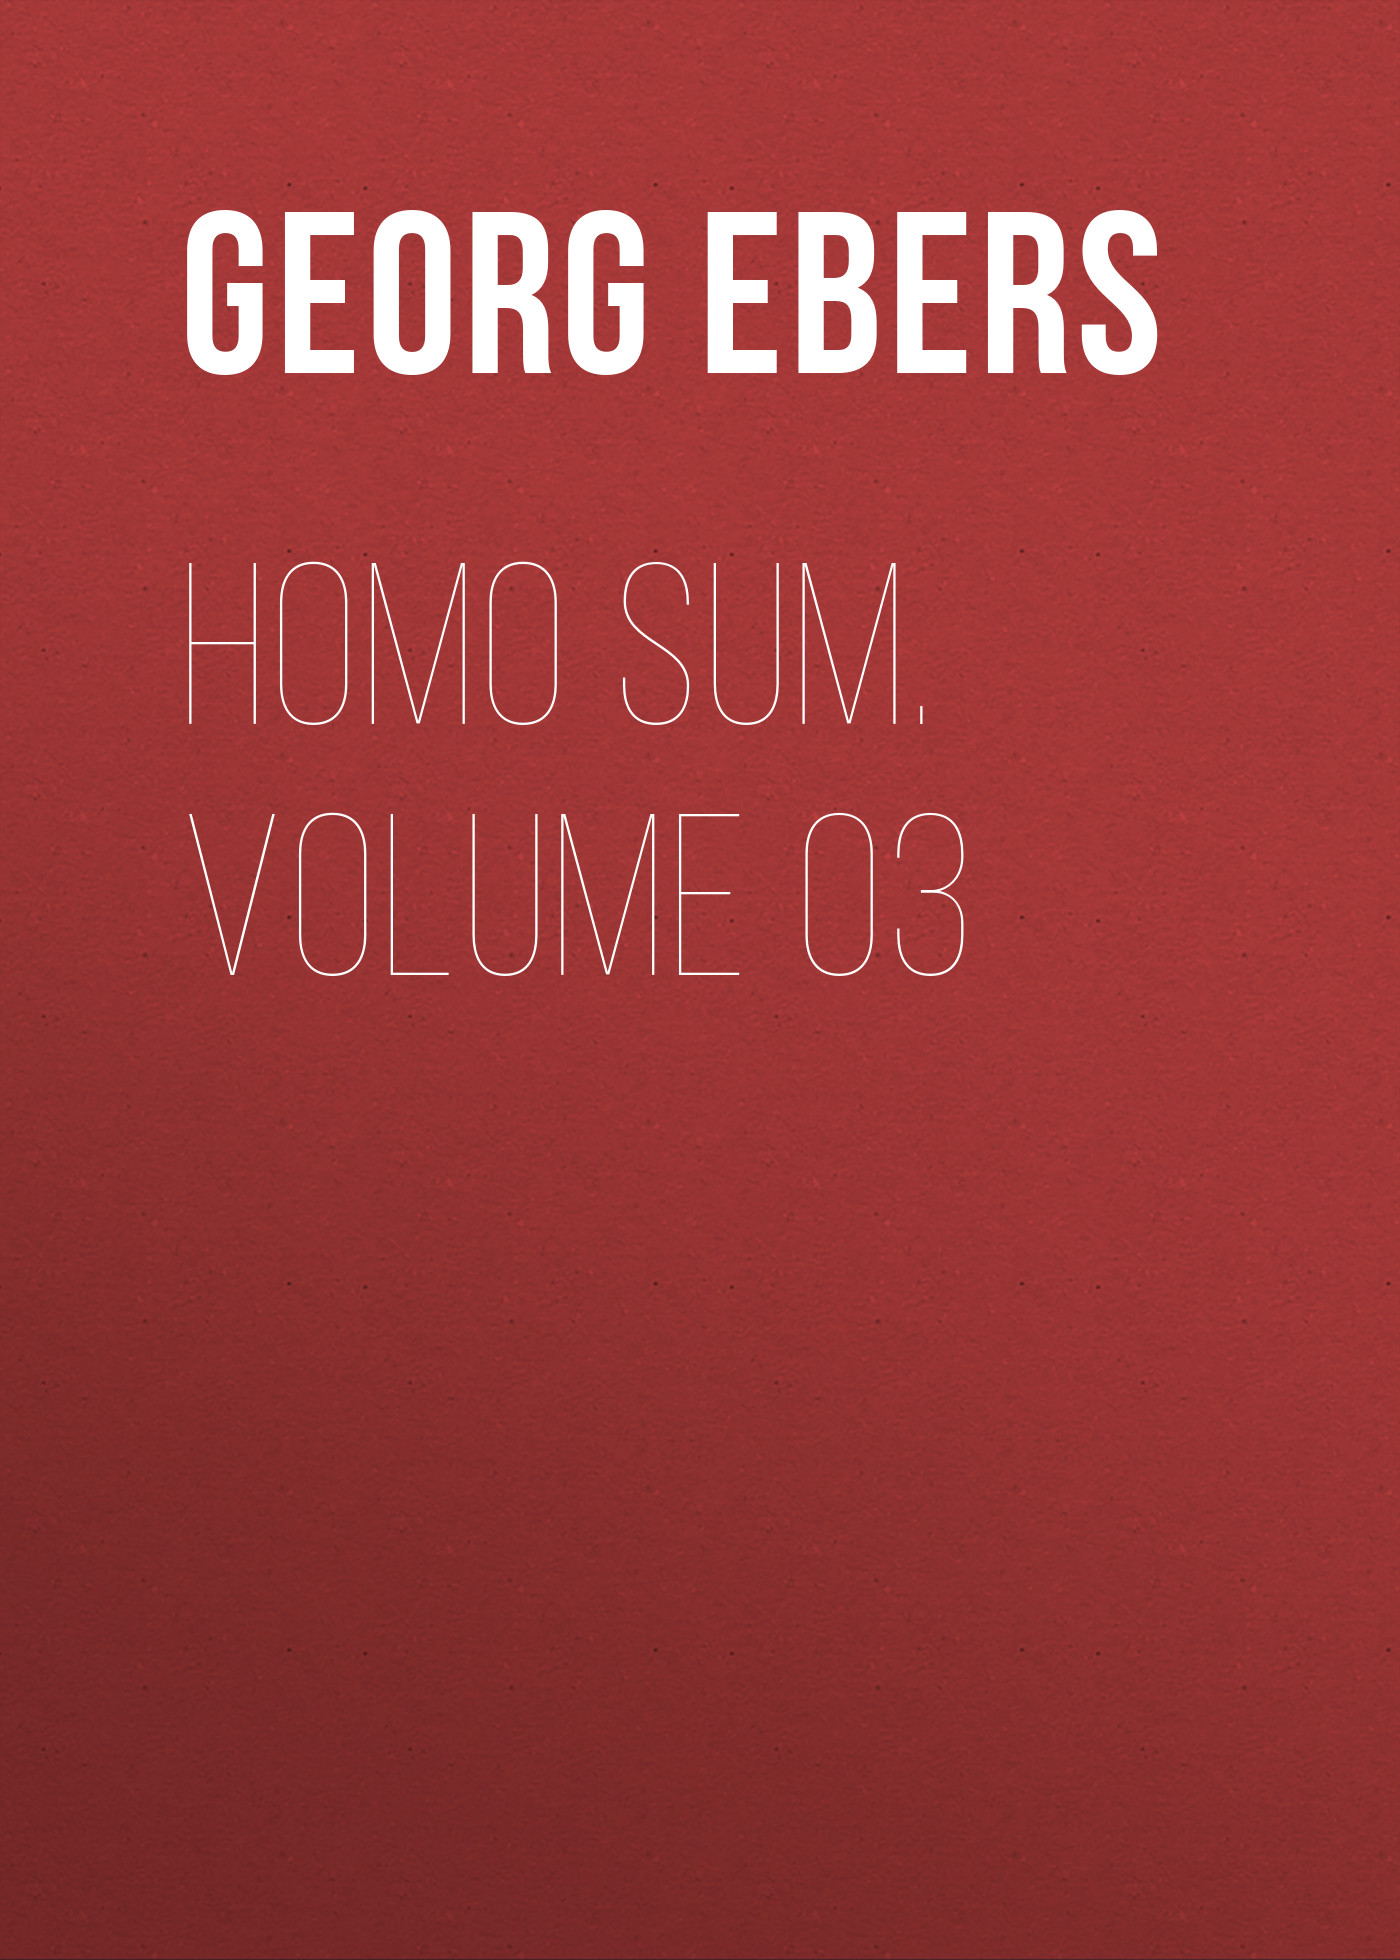 Книга Homo Sum. Volume 03 из серии , созданная Georg Ebers, может относится к жанру Зарубежная классика, Зарубежная старинная литература. Стоимость электронной книги Homo Sum. Volume 03 с идентификатором 42628155 составляет 0 руб.